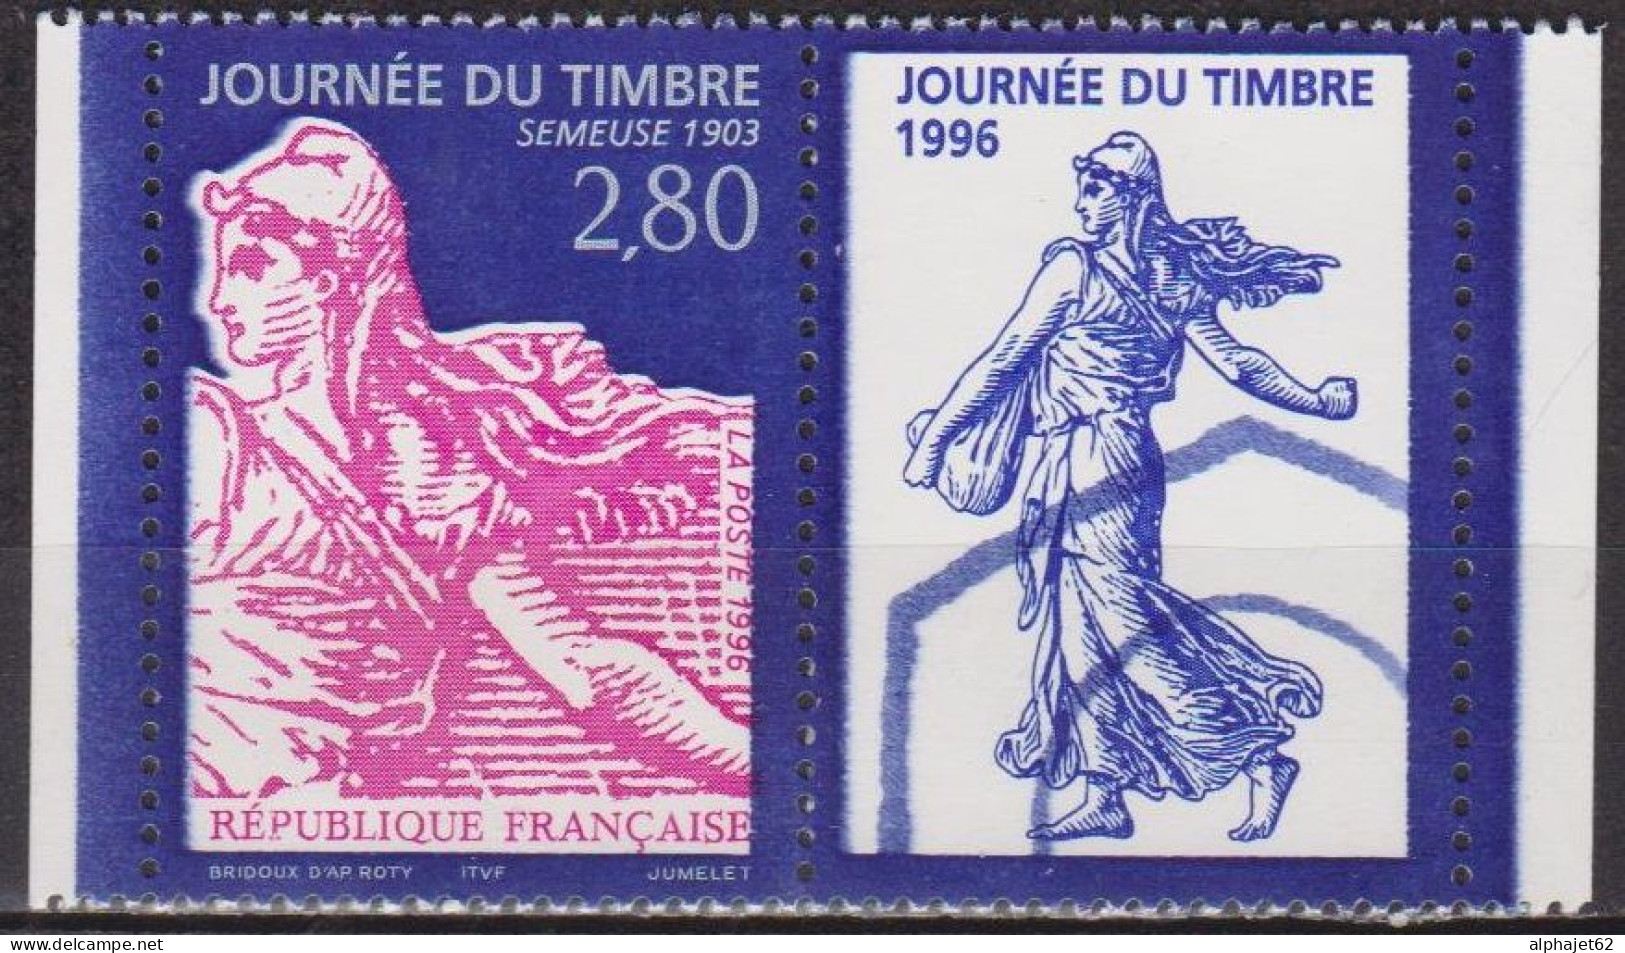 Journée Du Timbre, Type Semeuse 1903 - FRANCE - N° 2991 A ** - 1996 - Nuevos